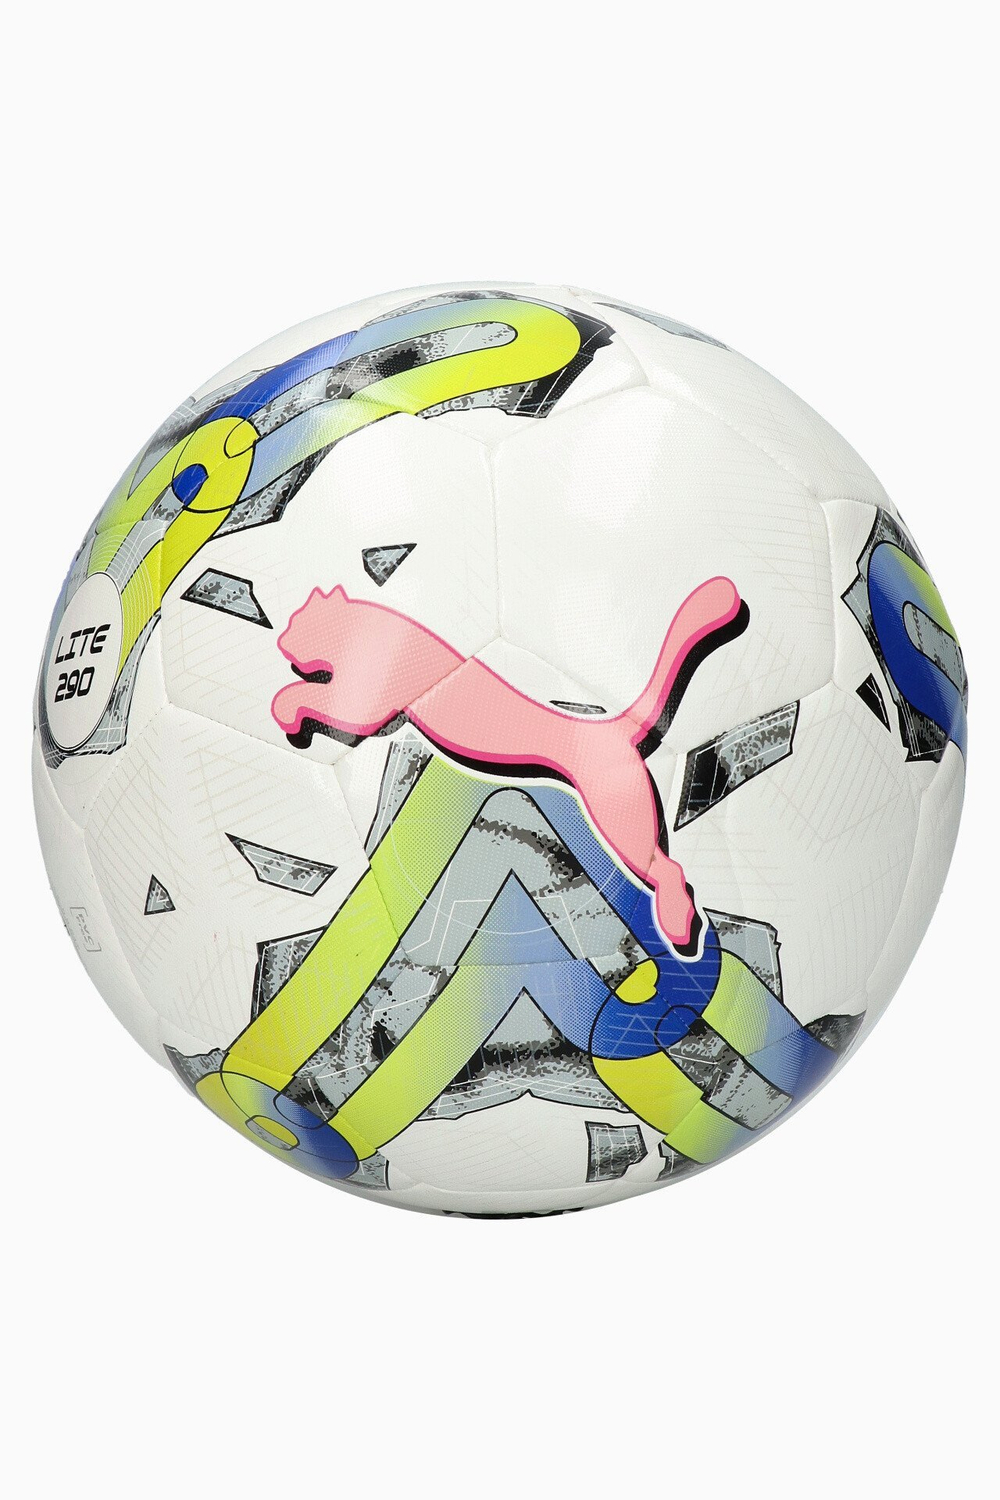 Футбольный мяч Puma Orbita 5 Hybrid Lite 290 размер 5